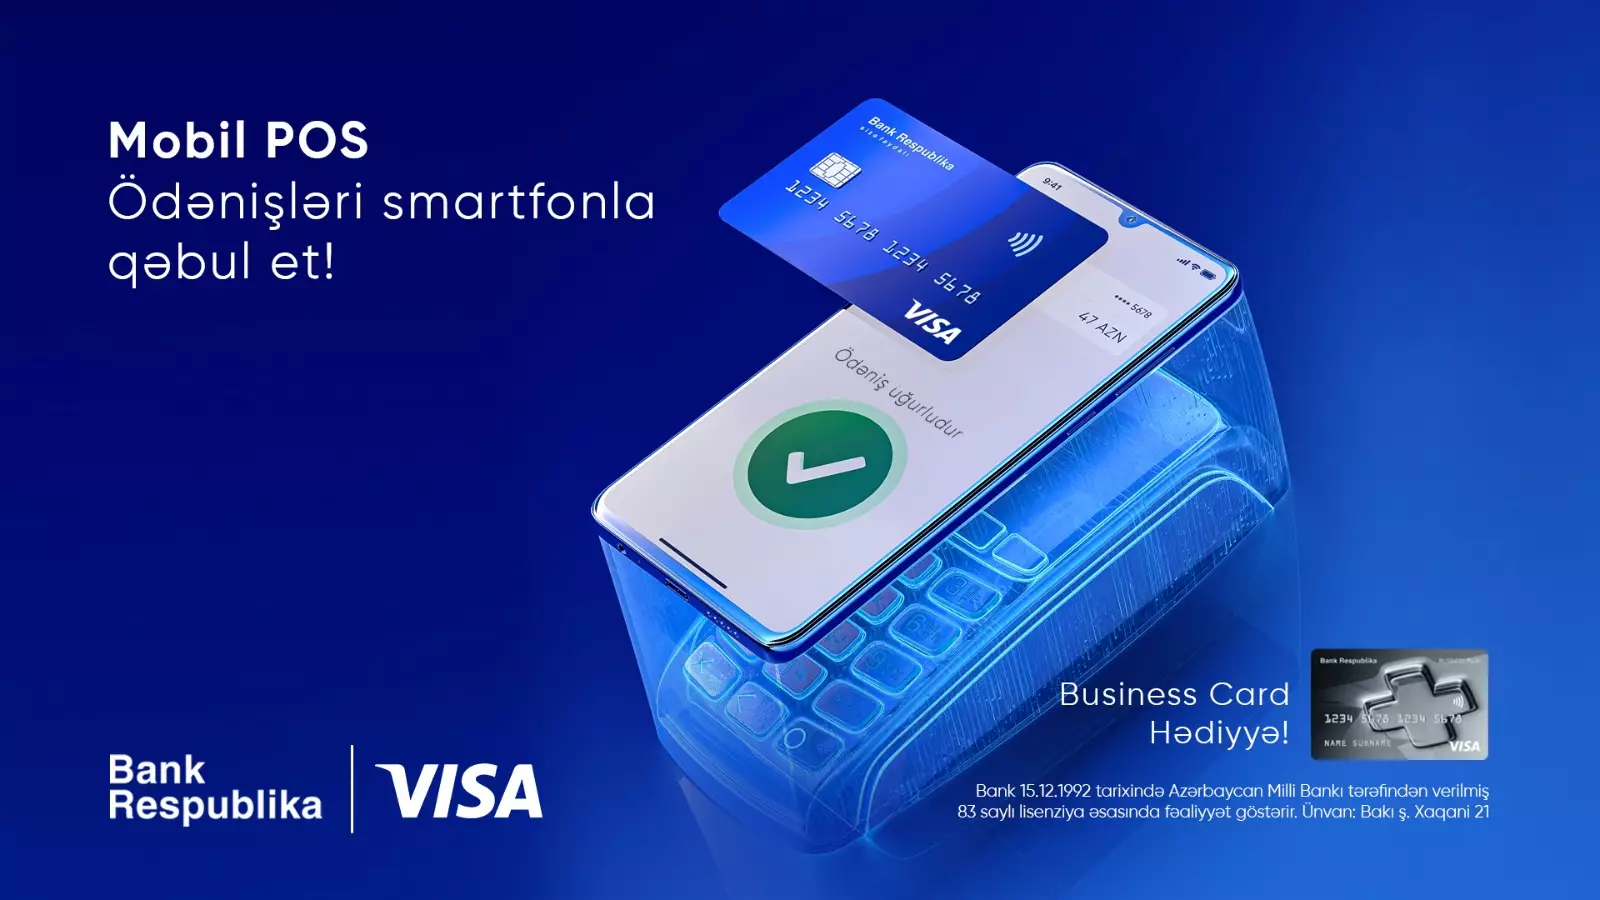 Bank Respublika Visa ilə birgə yeni “Mobil POS” xidmətini təqdim etdi